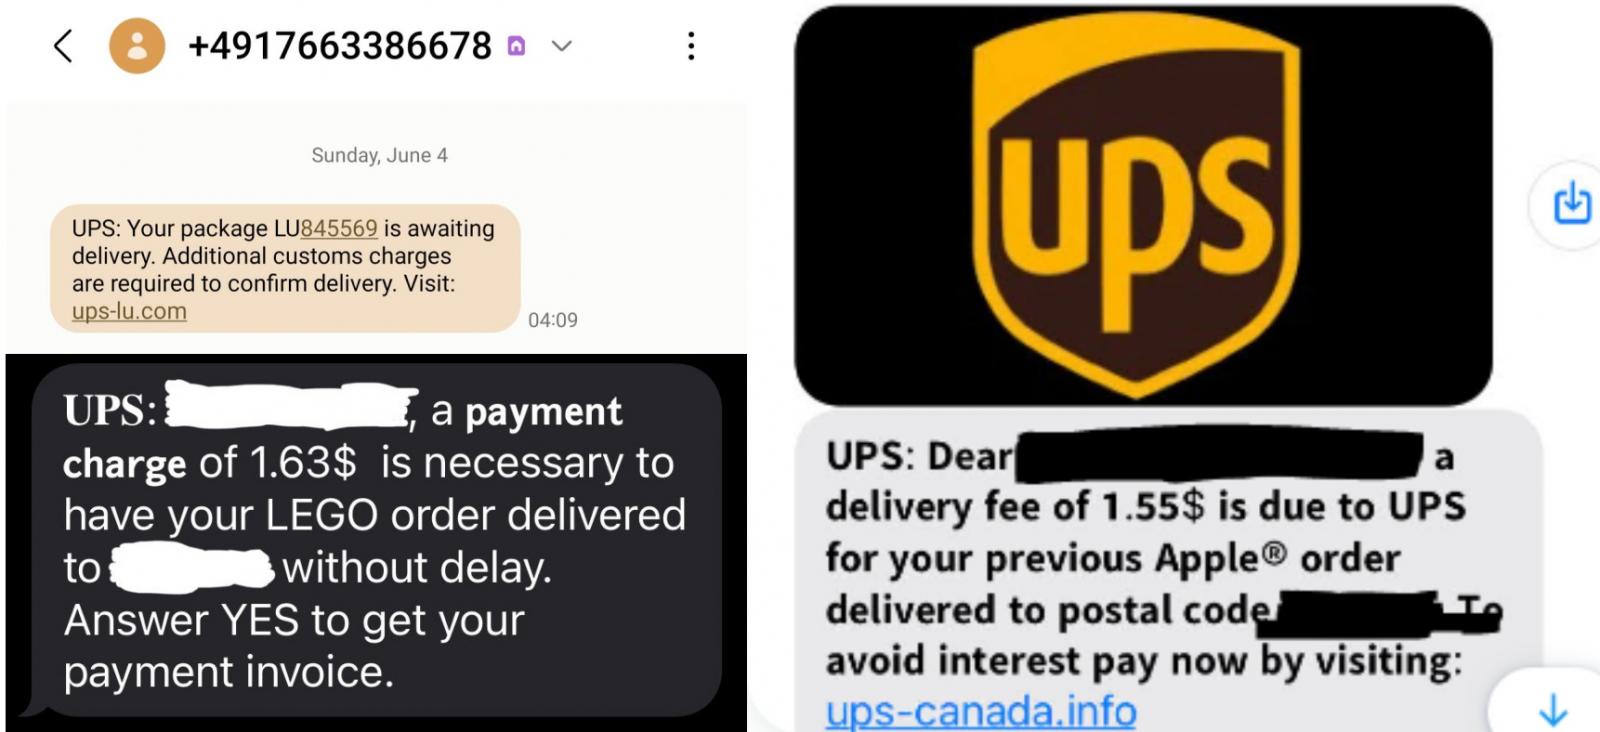 UPS SMS フィッシングのサンプル